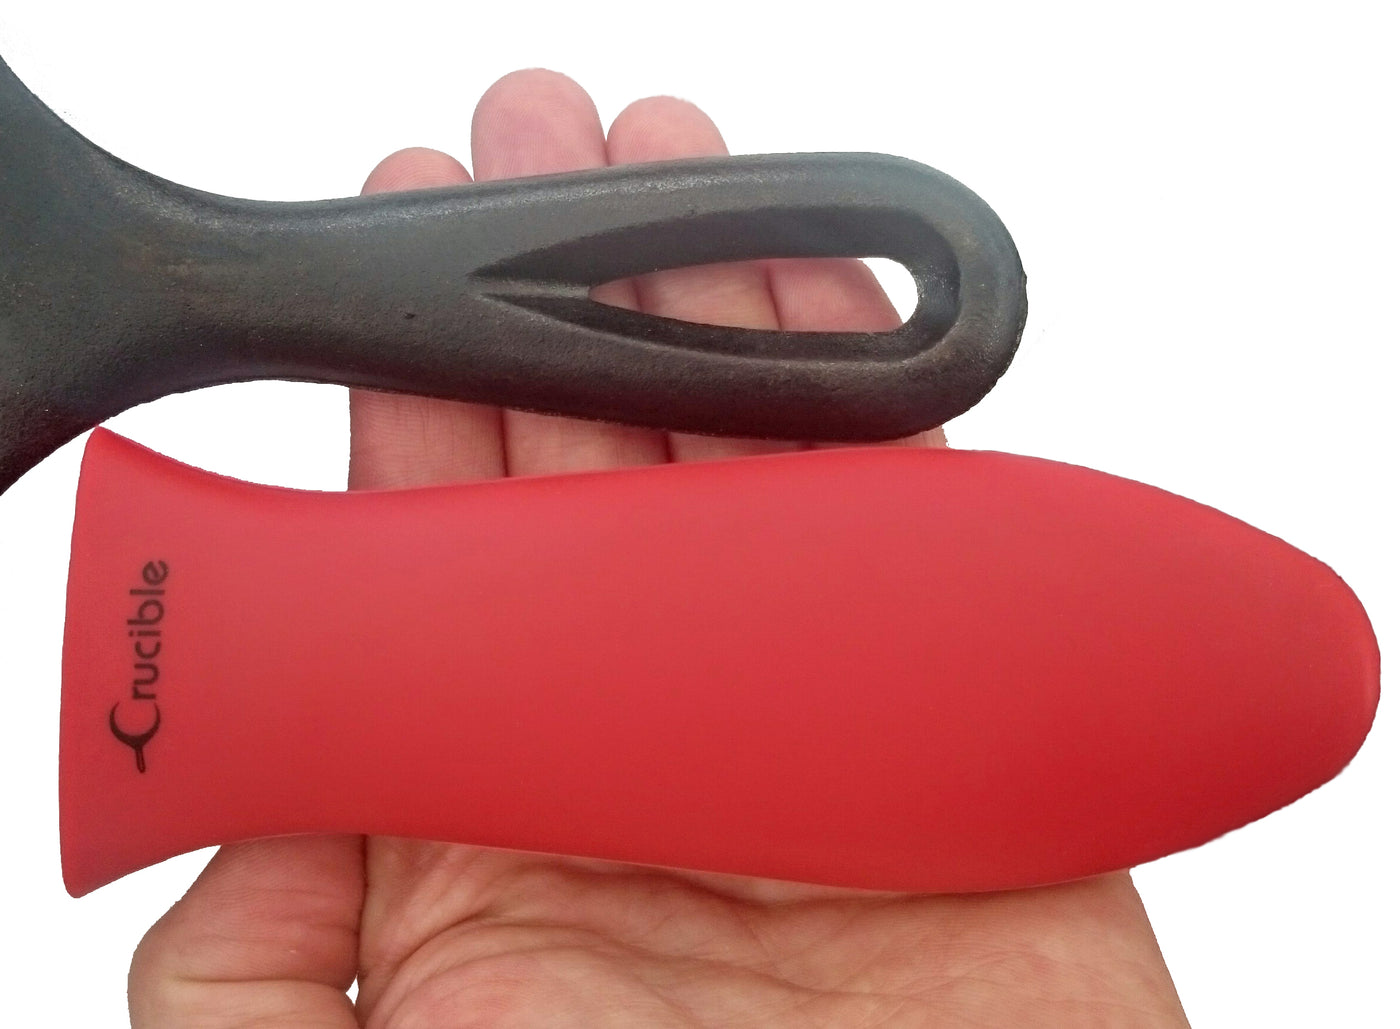 硅胶热手柄支架、隔热垫（红色大号）、套筒握把、手柄盖